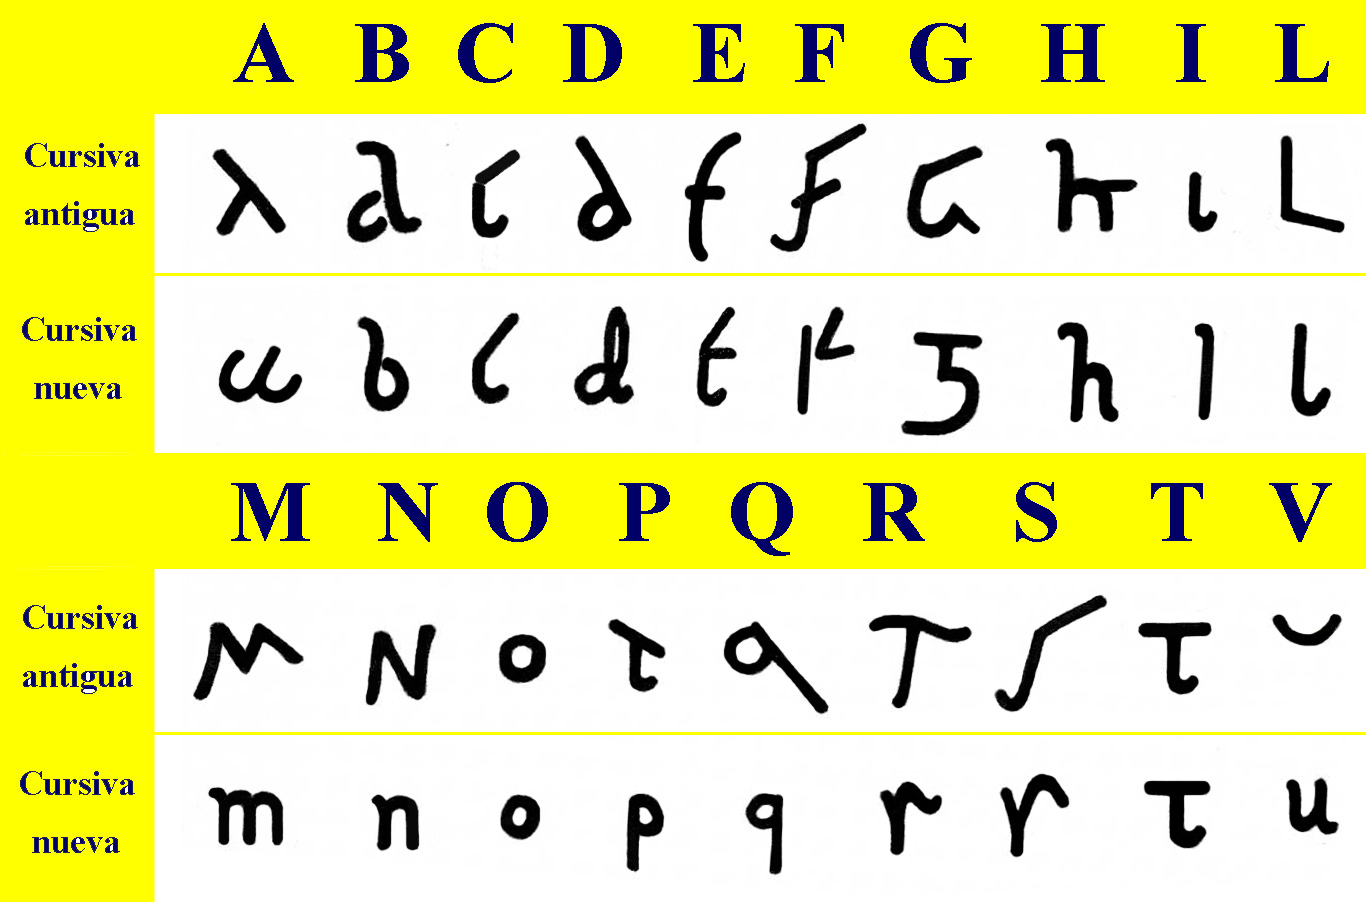 Letras cursivas romanas antigas (usadas entre os séculos I A.C. e III) e novas (usadas entre os sécs. III e VII)